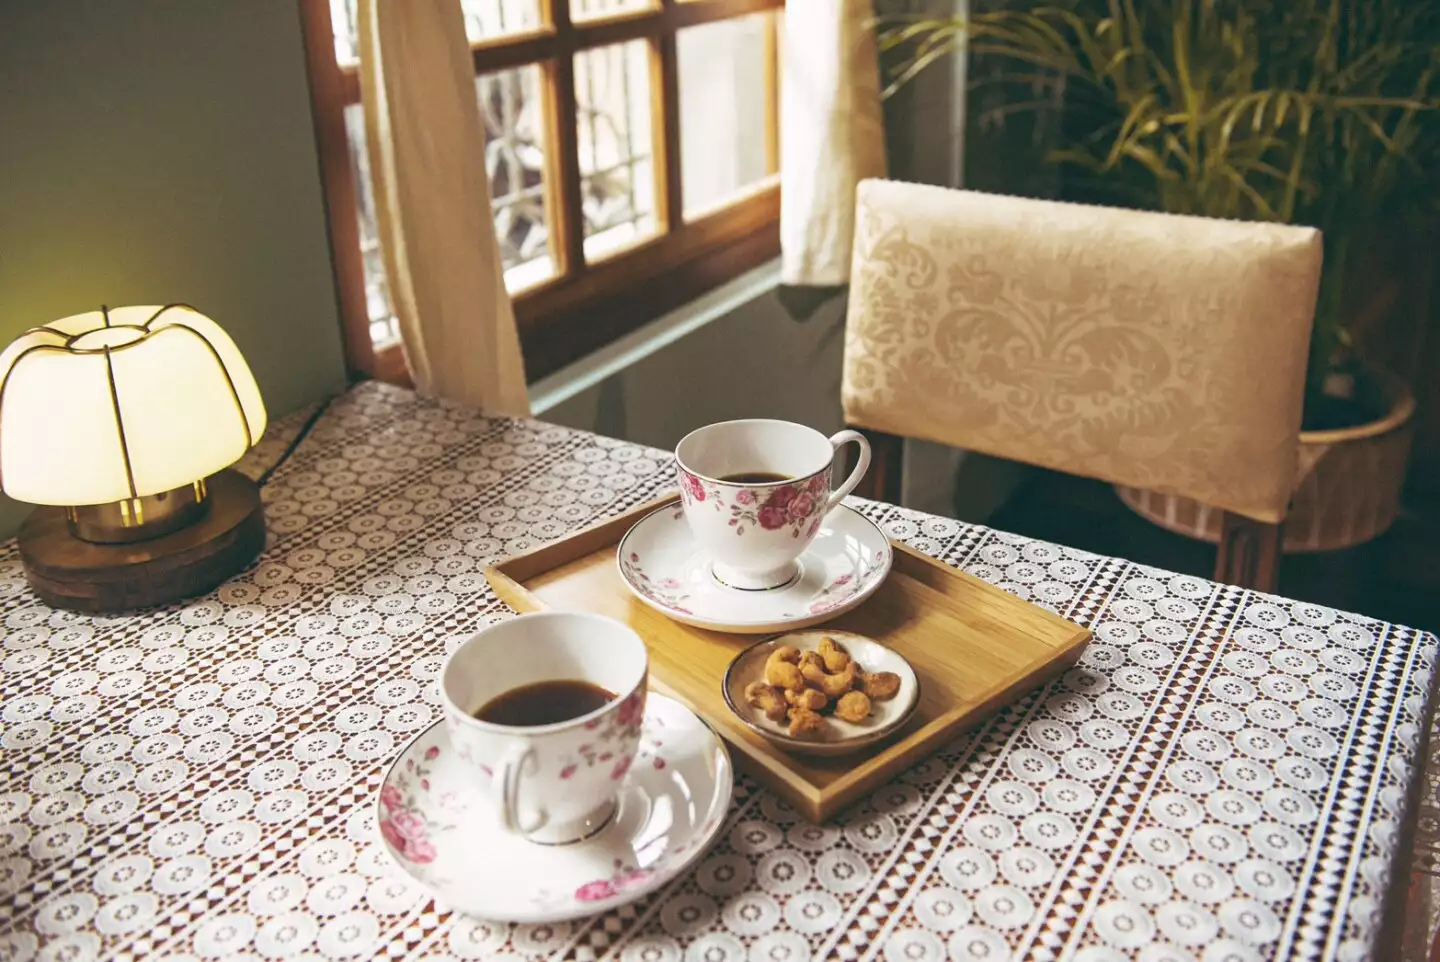 春花秘境提供咖啡、茶等多款下午茶選擇，讓消費者能買、能喝、能感受幸福的氛圍。圖片來源：豊泊荷·春花 Le Bonheur Design提供。